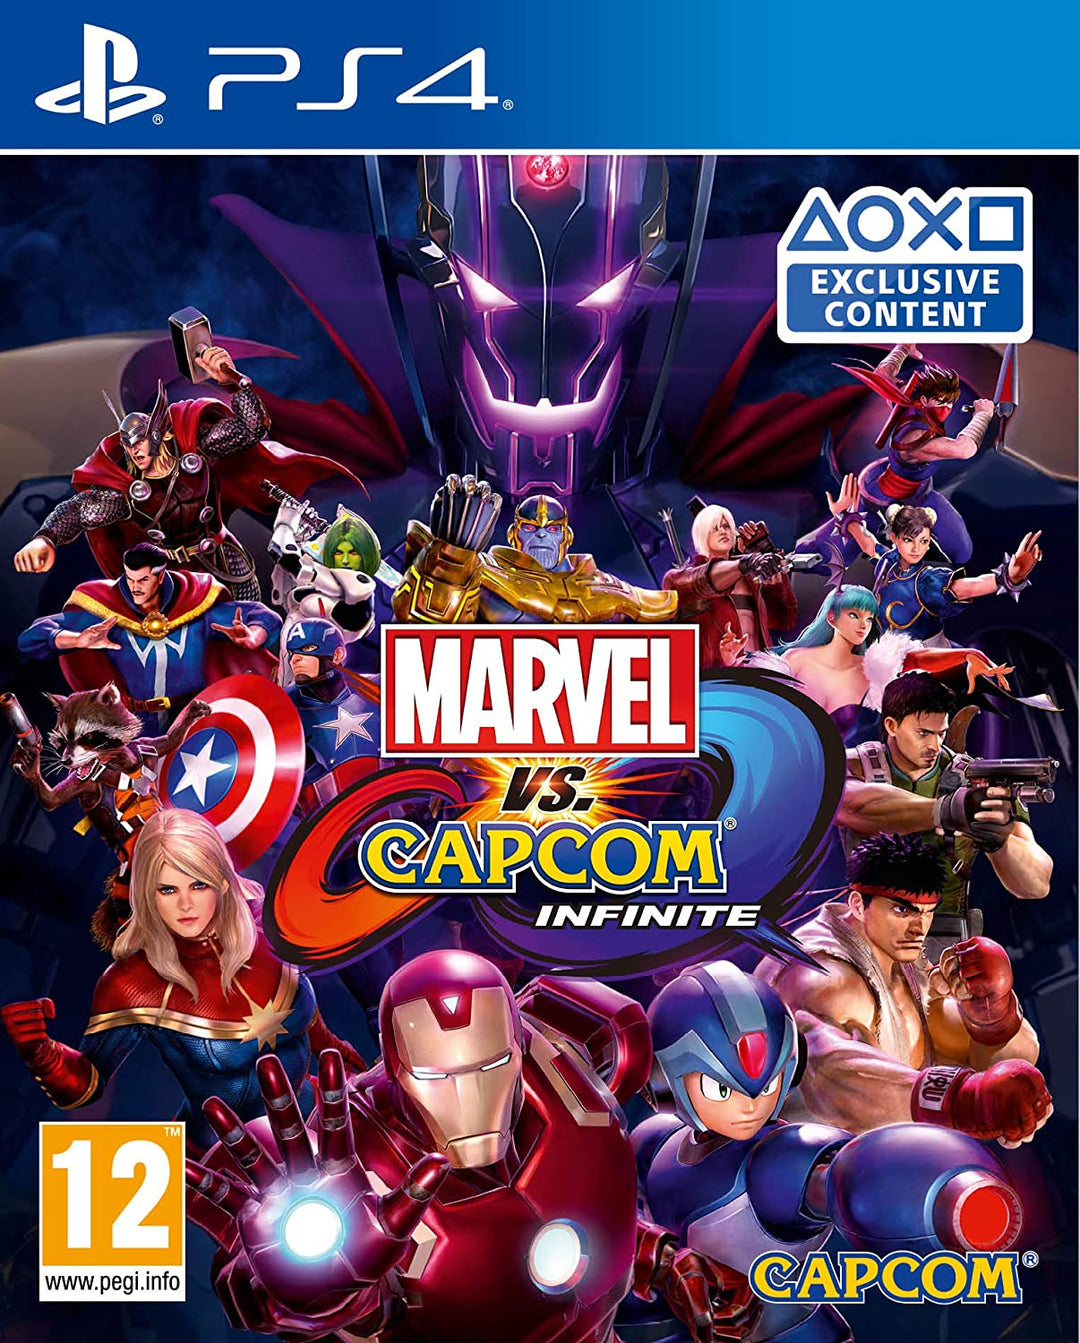 Capcom Marvel Vs Infinite (PS4)